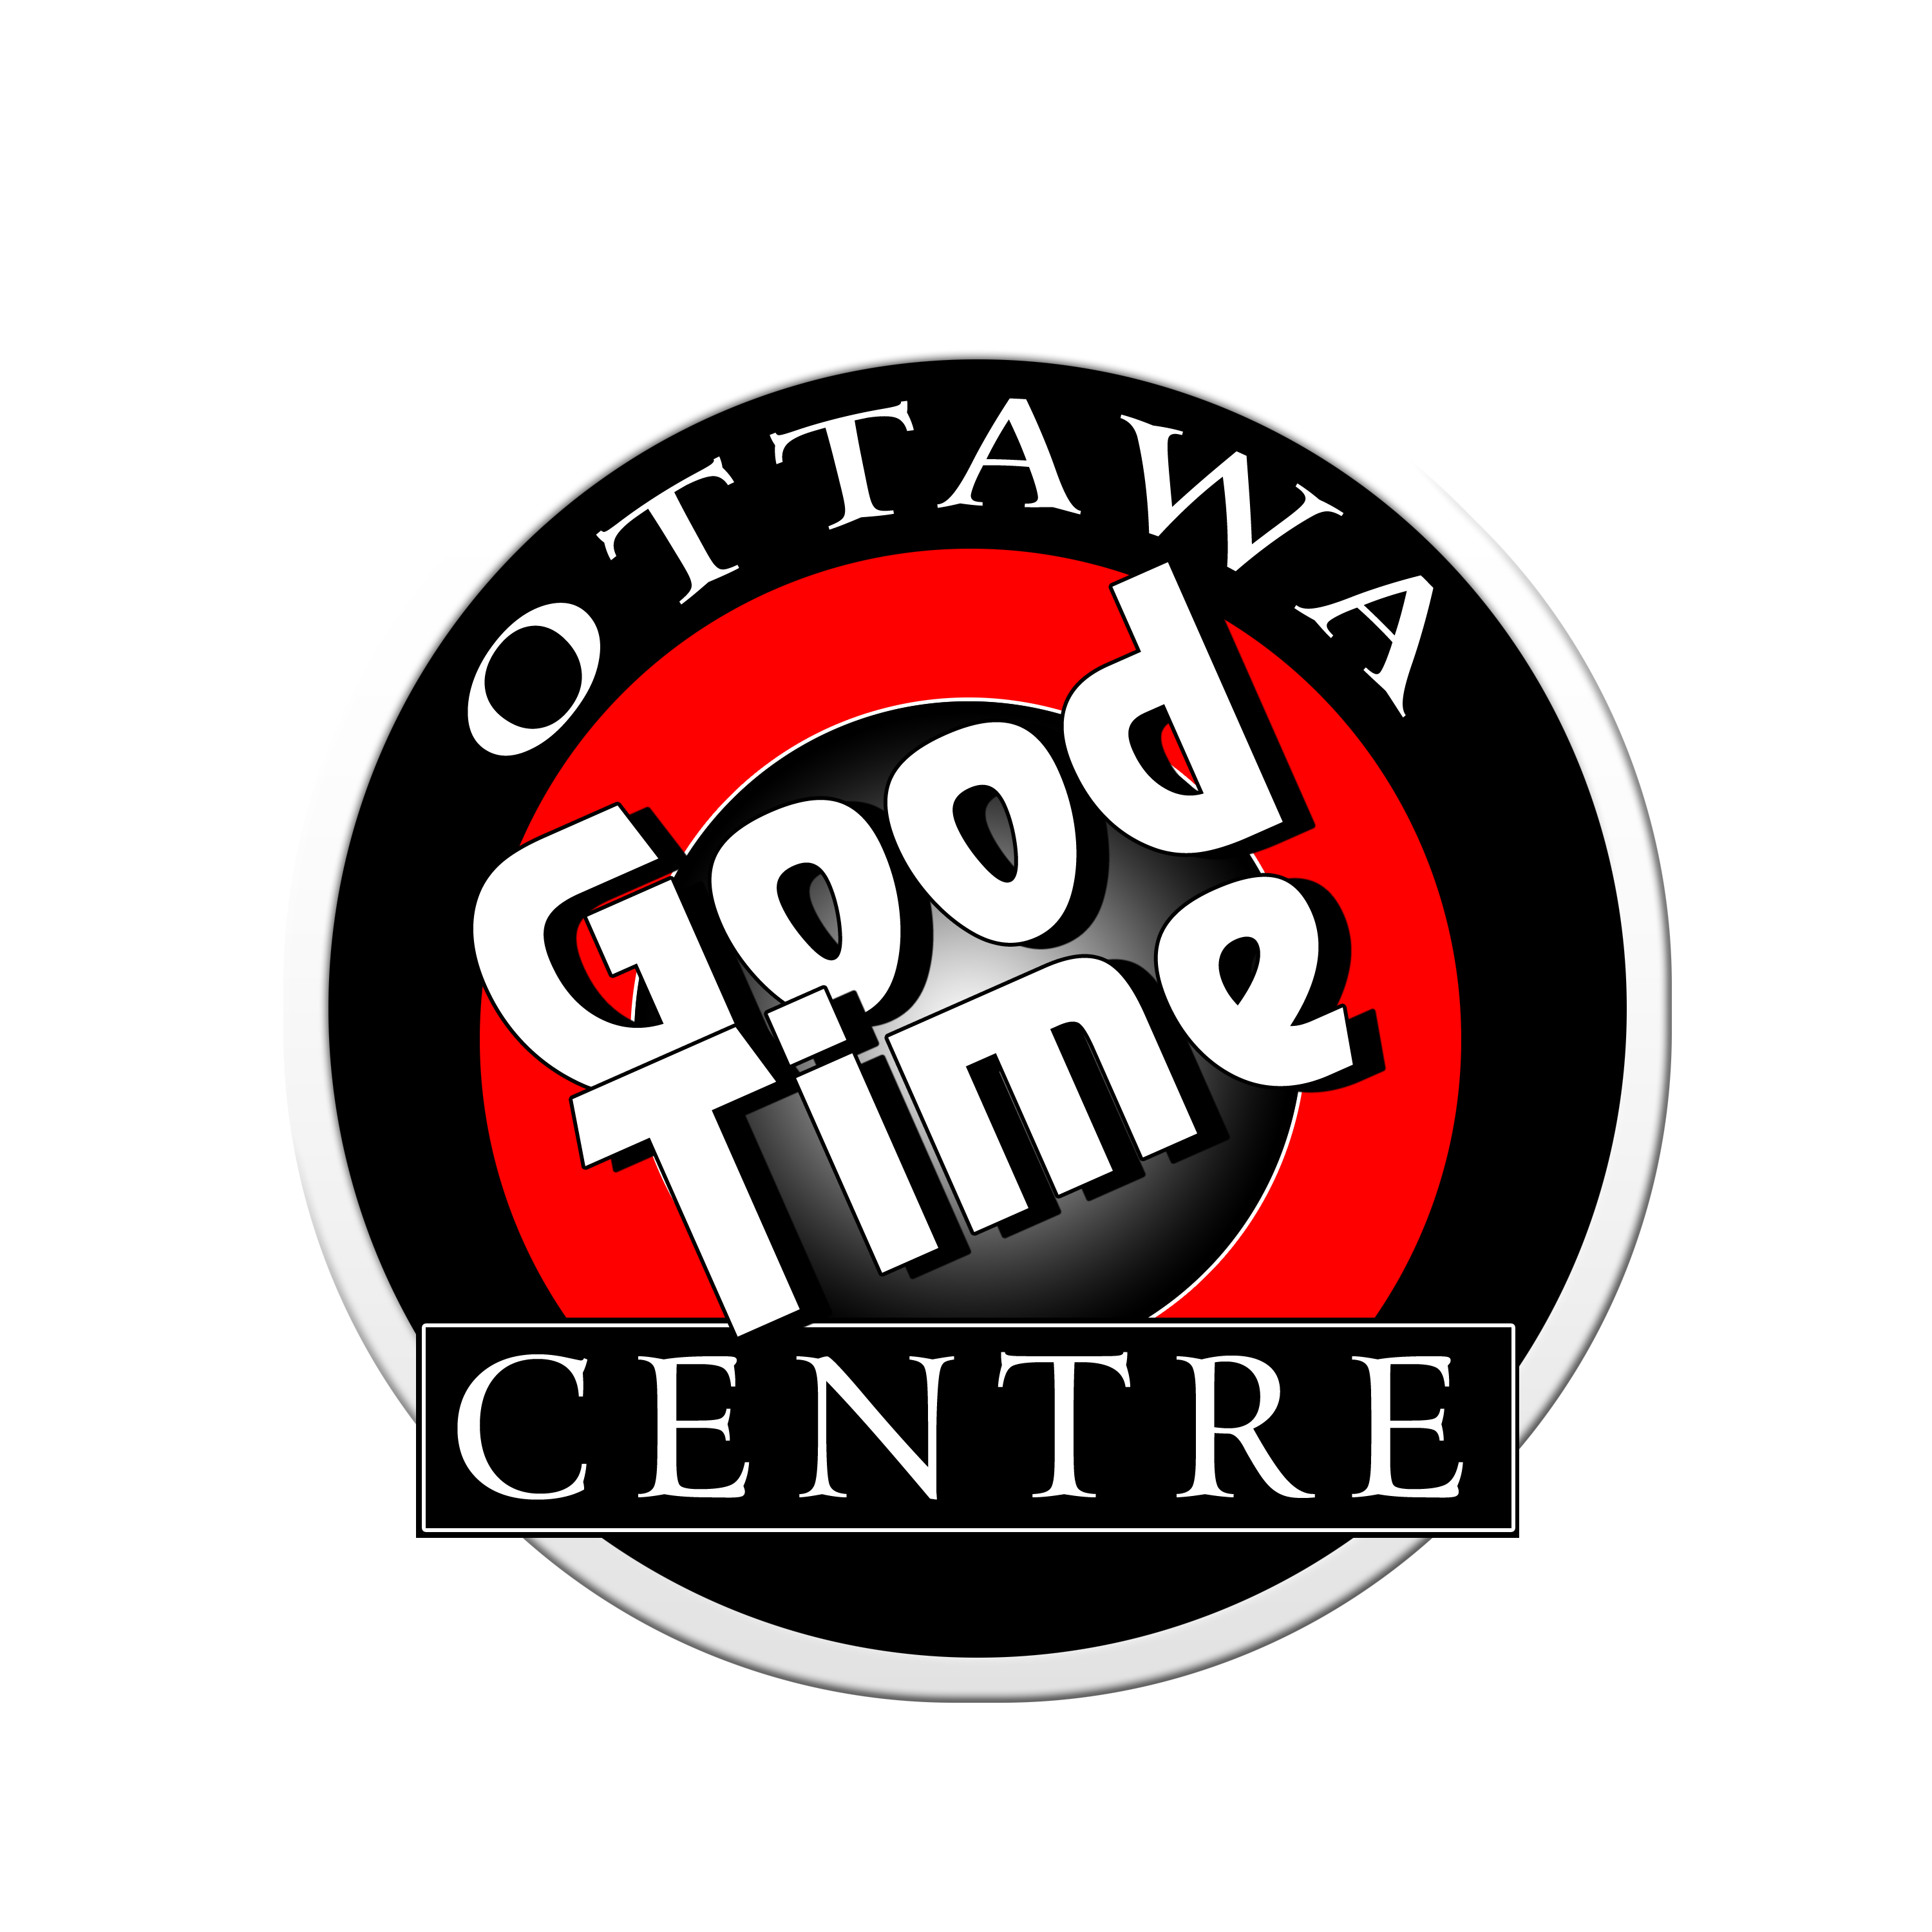 ER - Ottawa Goodtime Centre